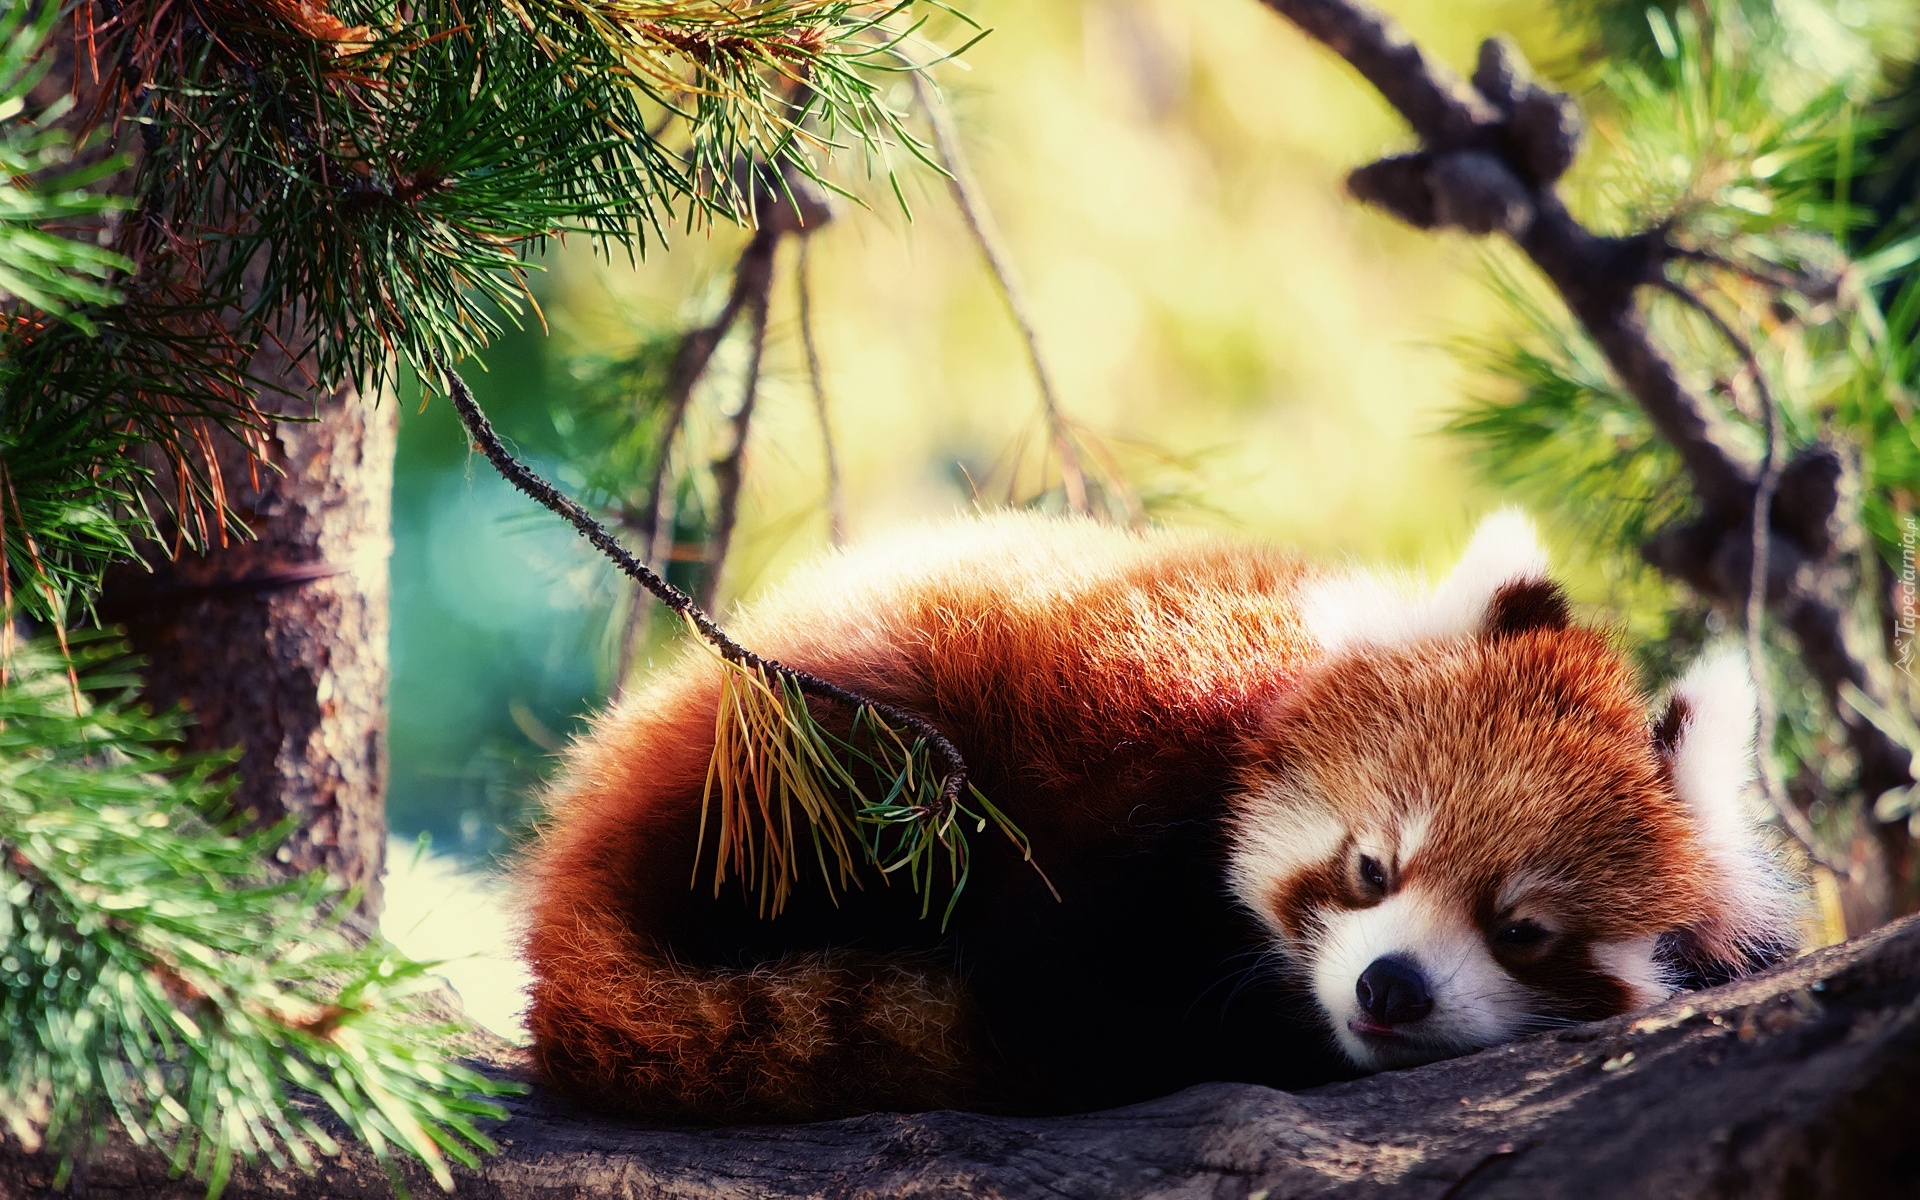 Panda, Czerwona, Drzewo, Wypoczynek, Pandka ruda